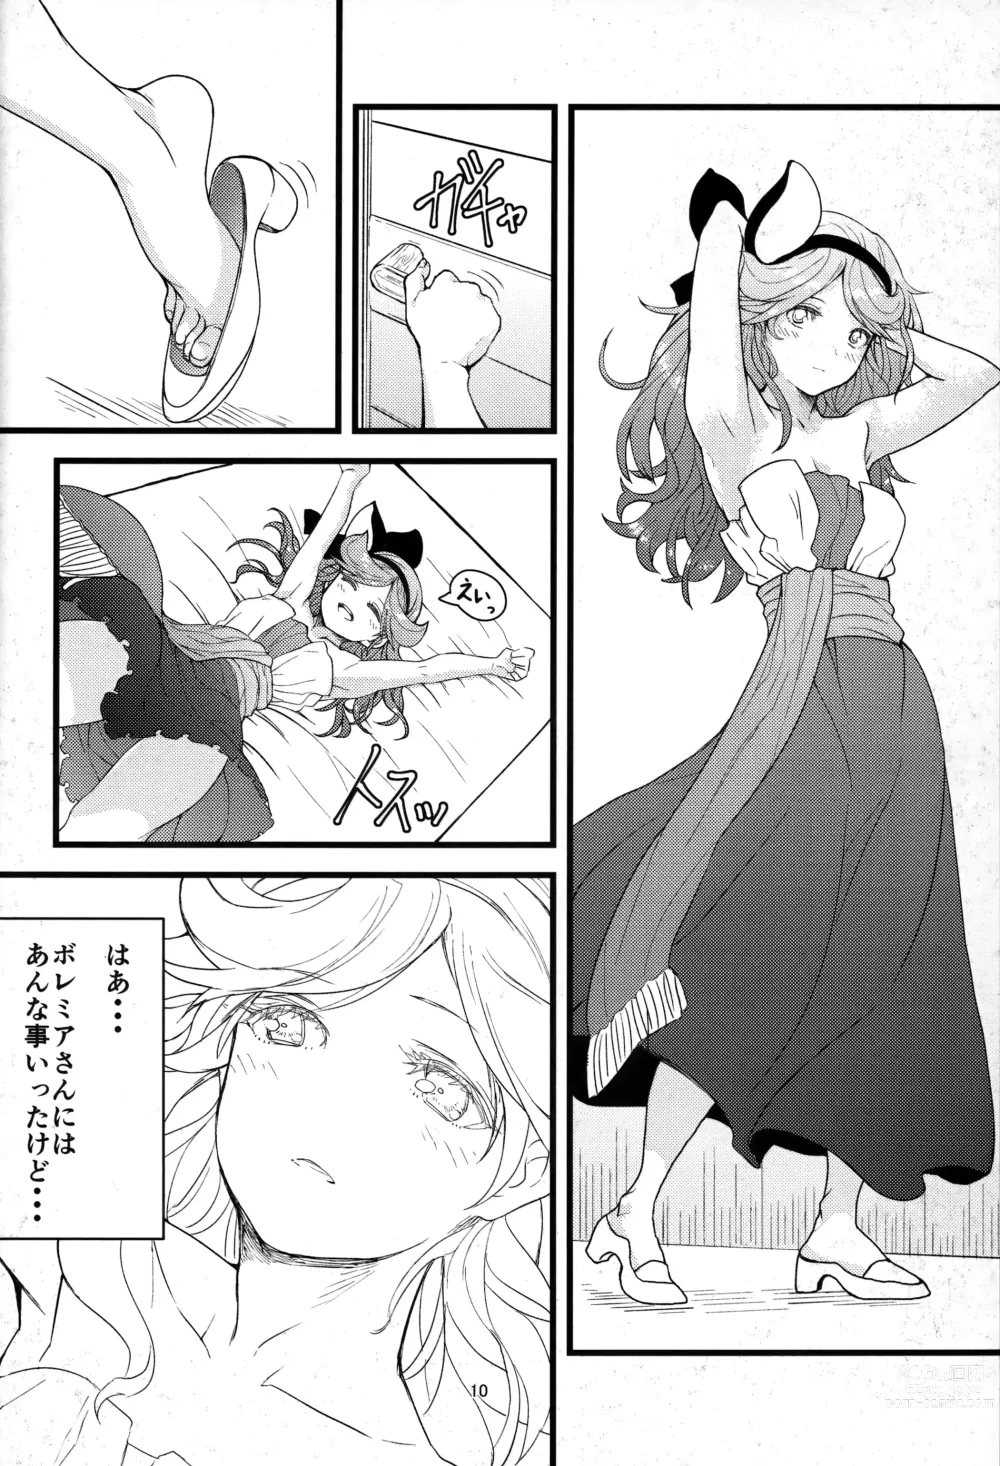 Page 9 of doujinshi Kowaku no Miko